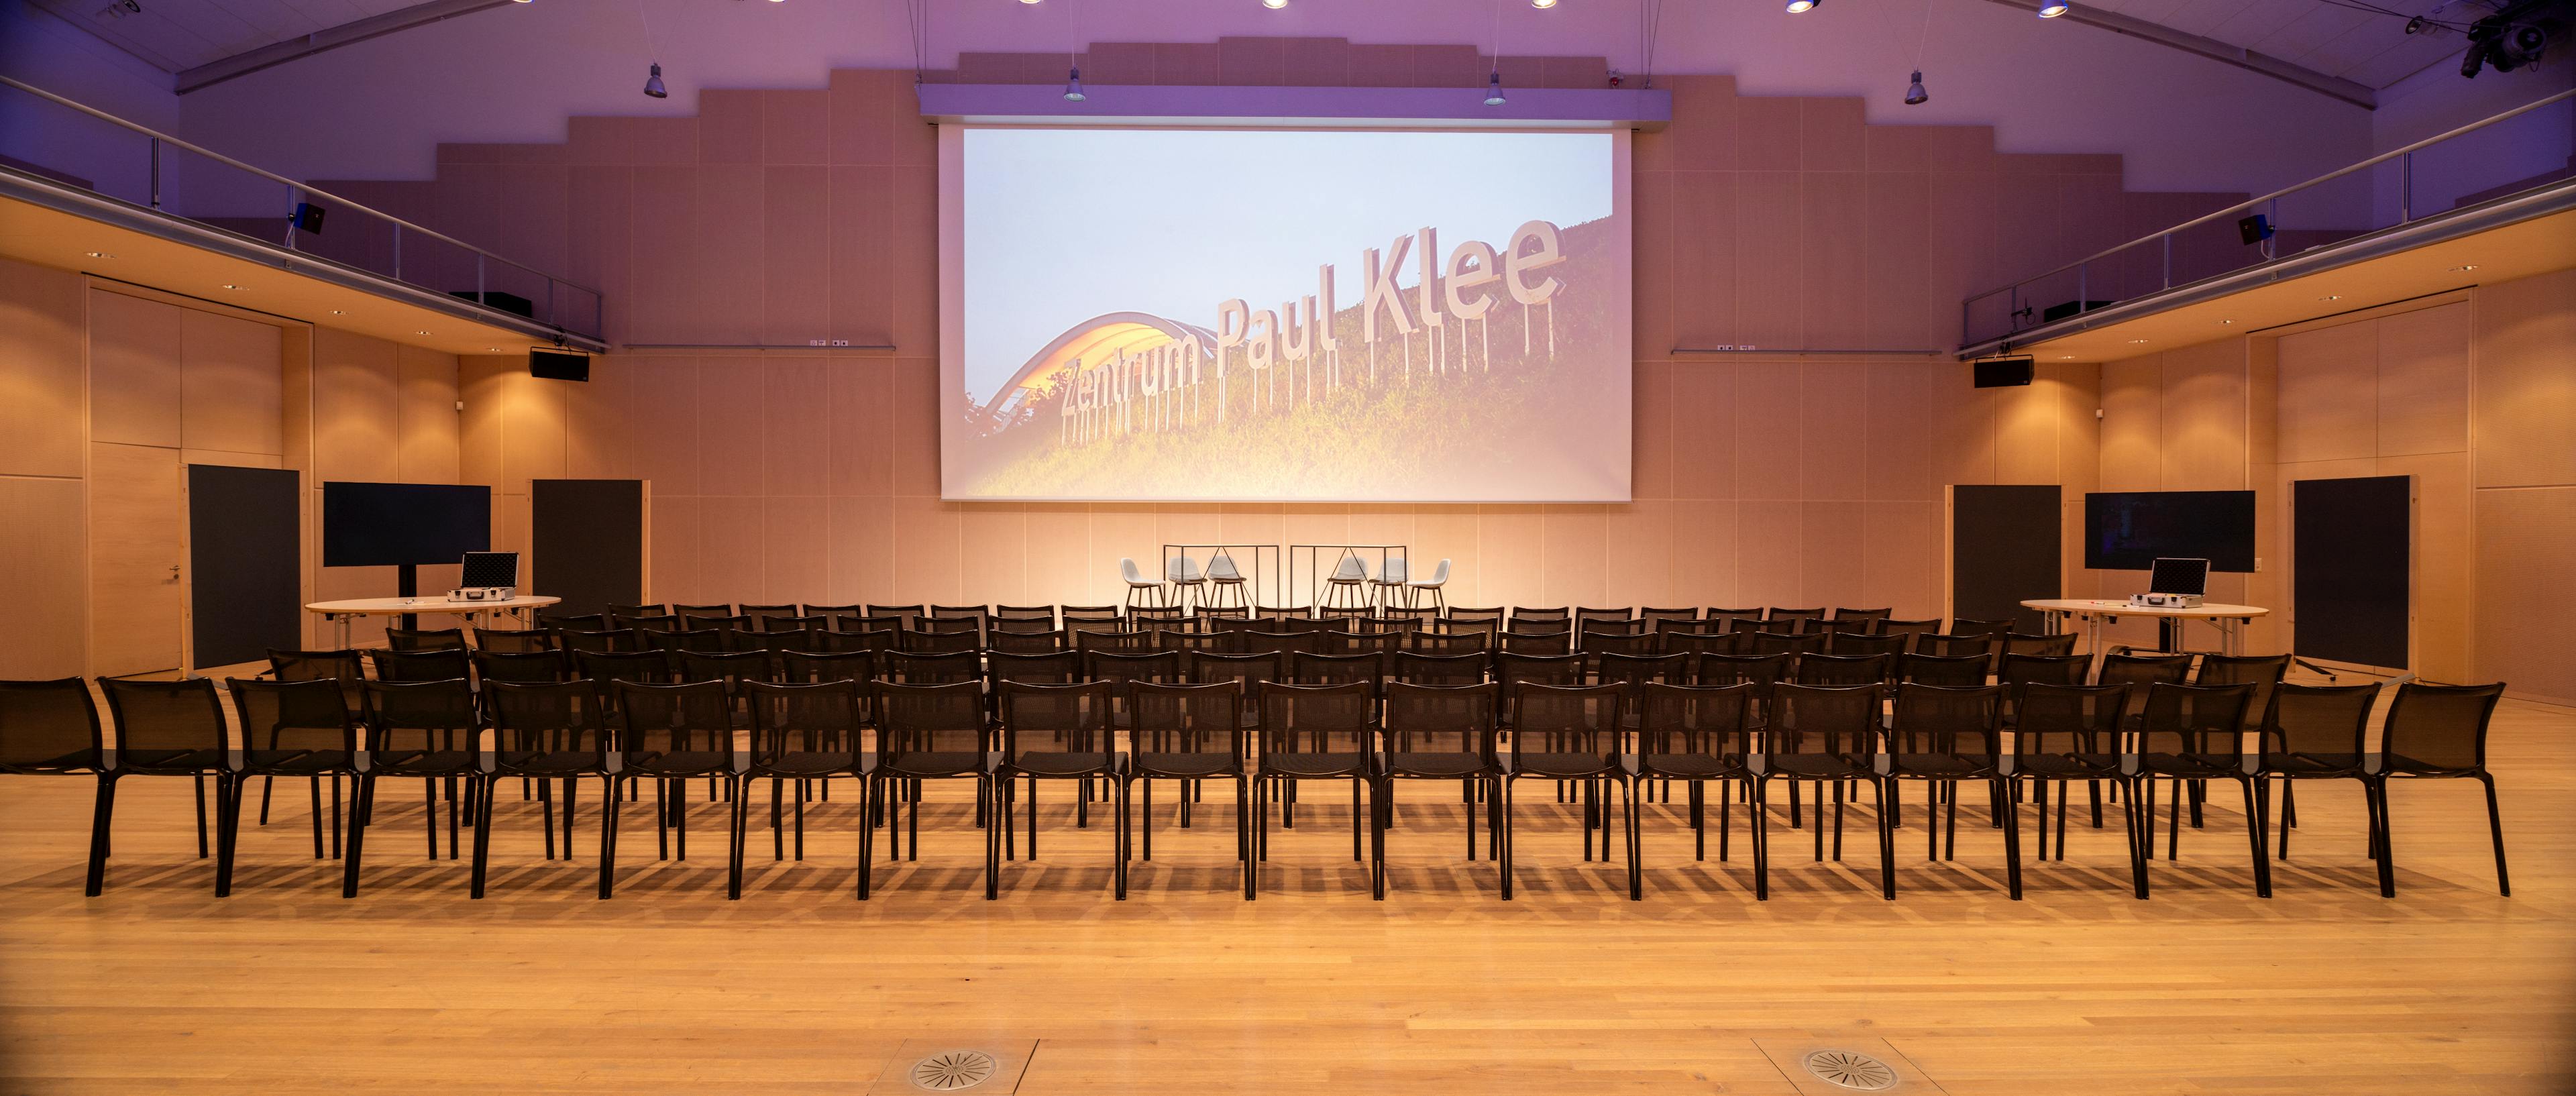 Forum im Zentrum Paul Klee